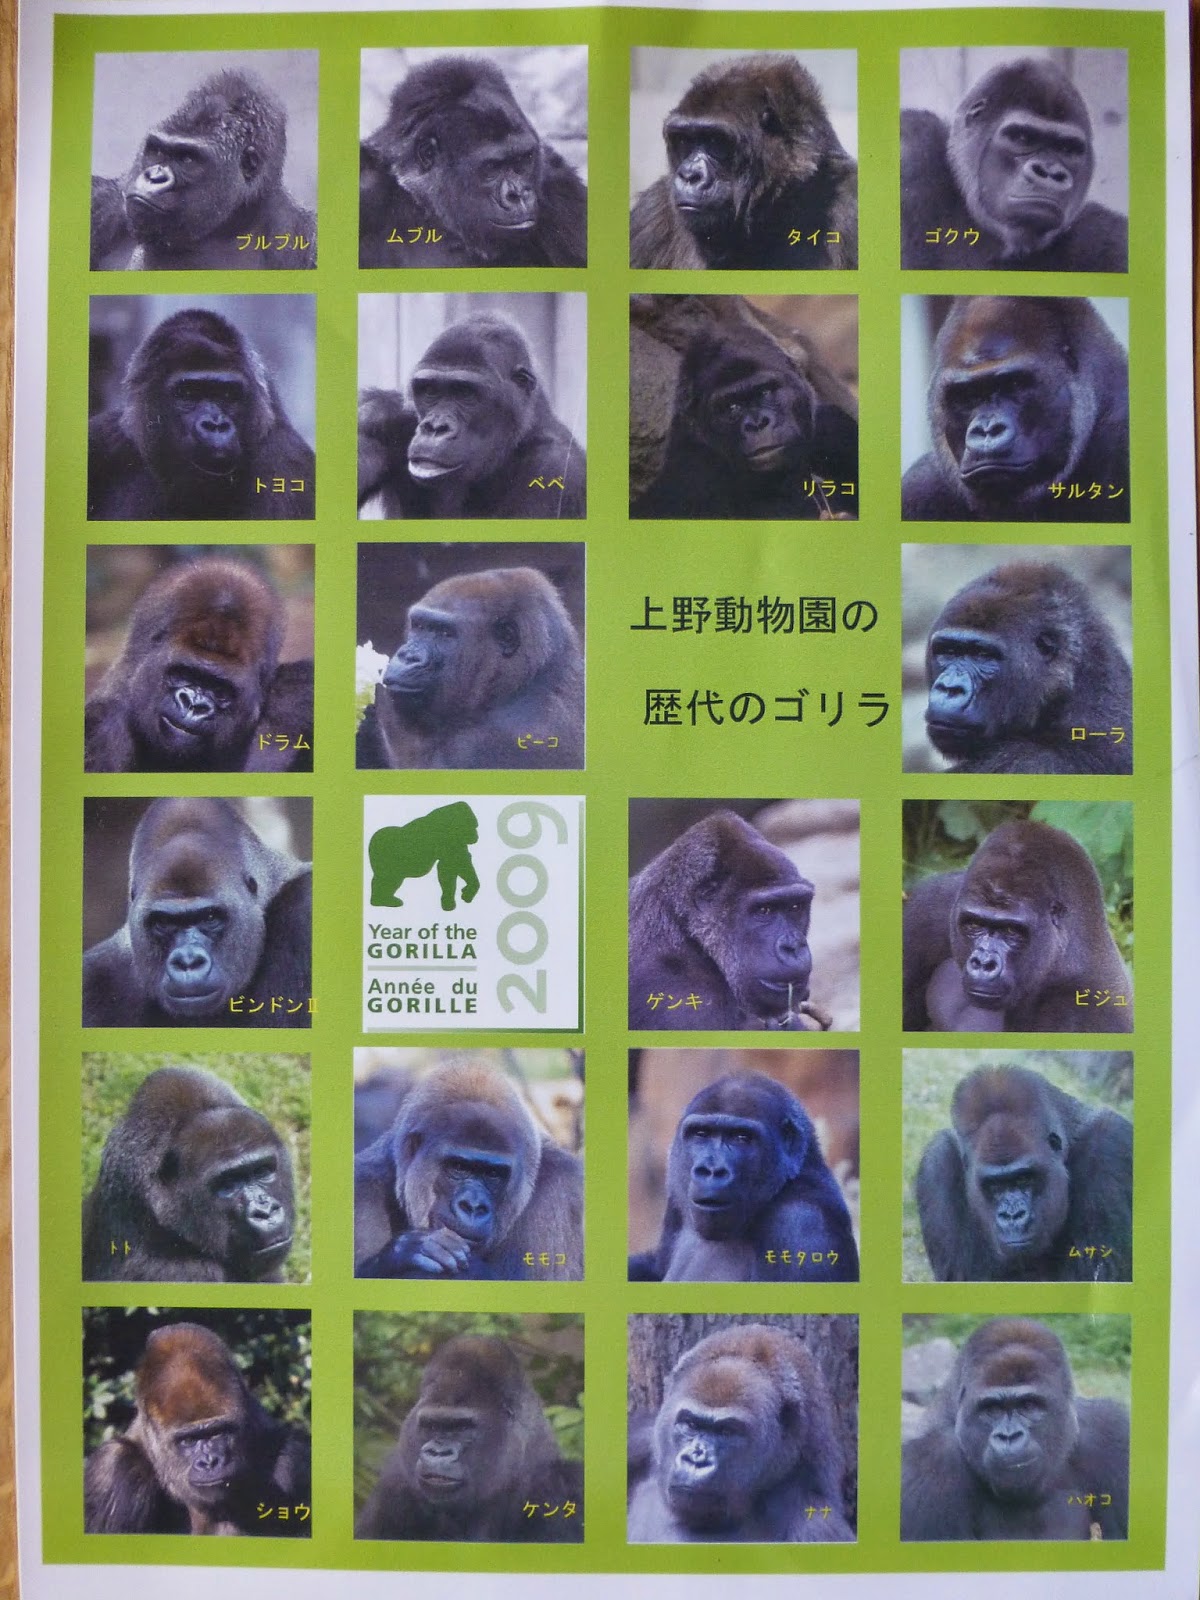 Gorilla 日記: 上野動物園の歴代のゴリラ